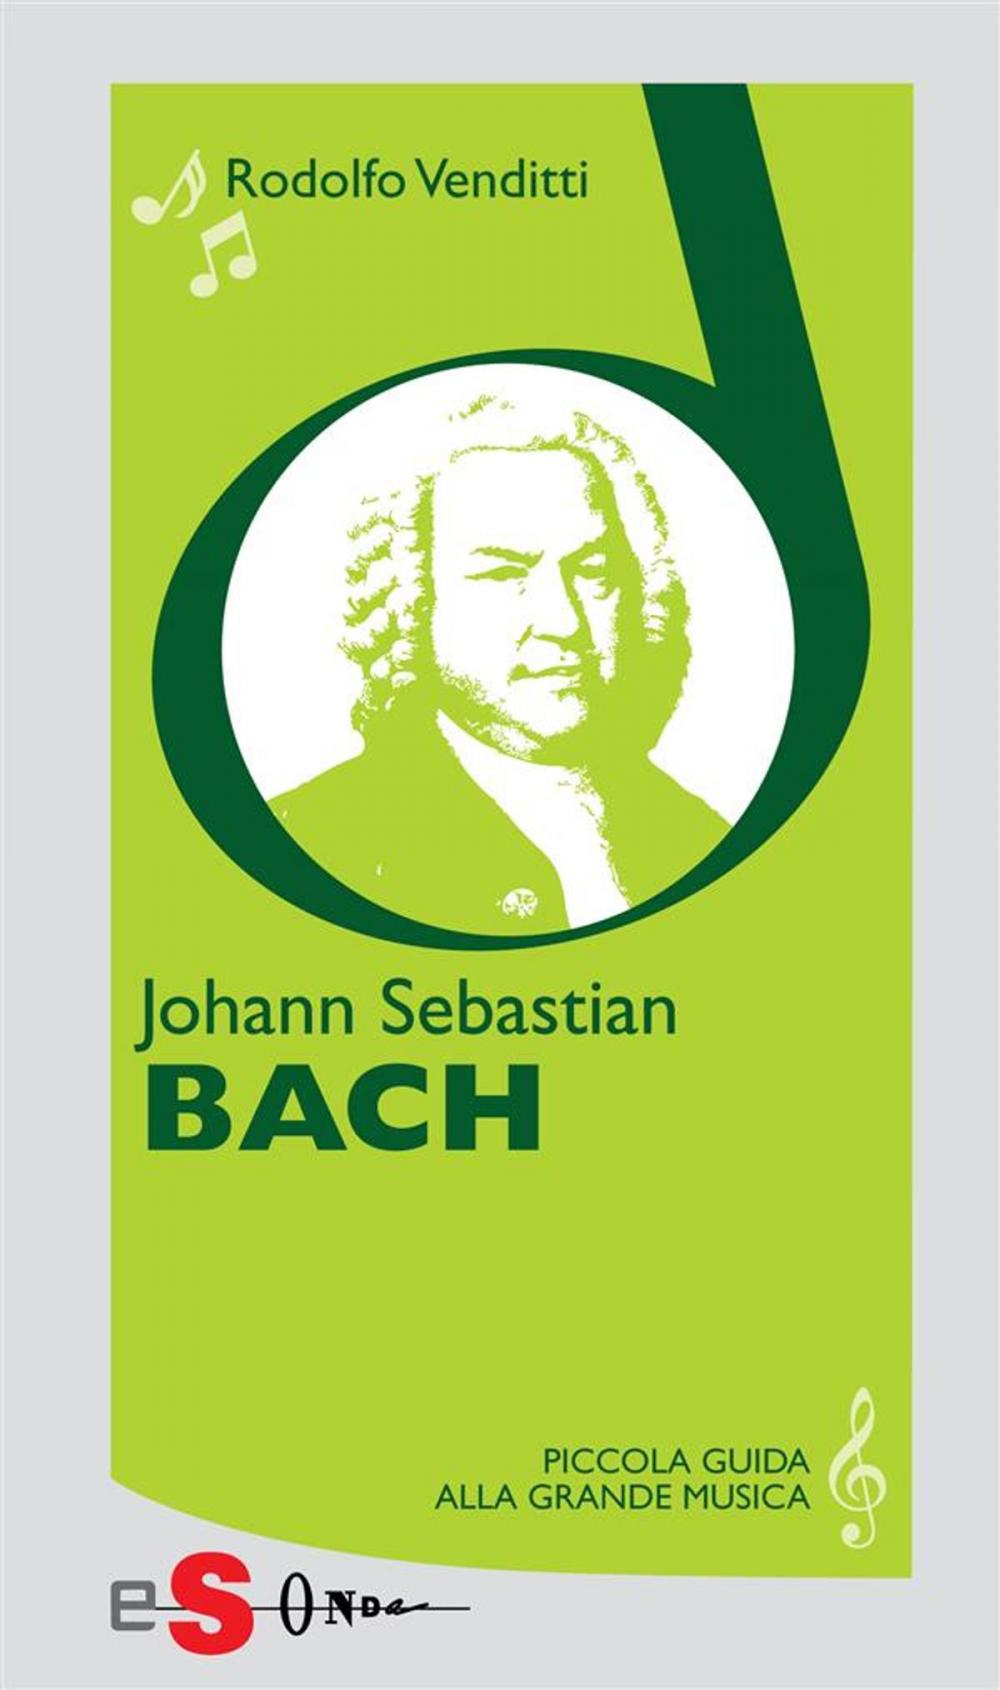 Big bigCover of Piccola guida alla grande musica - Johann Sebastian Bach